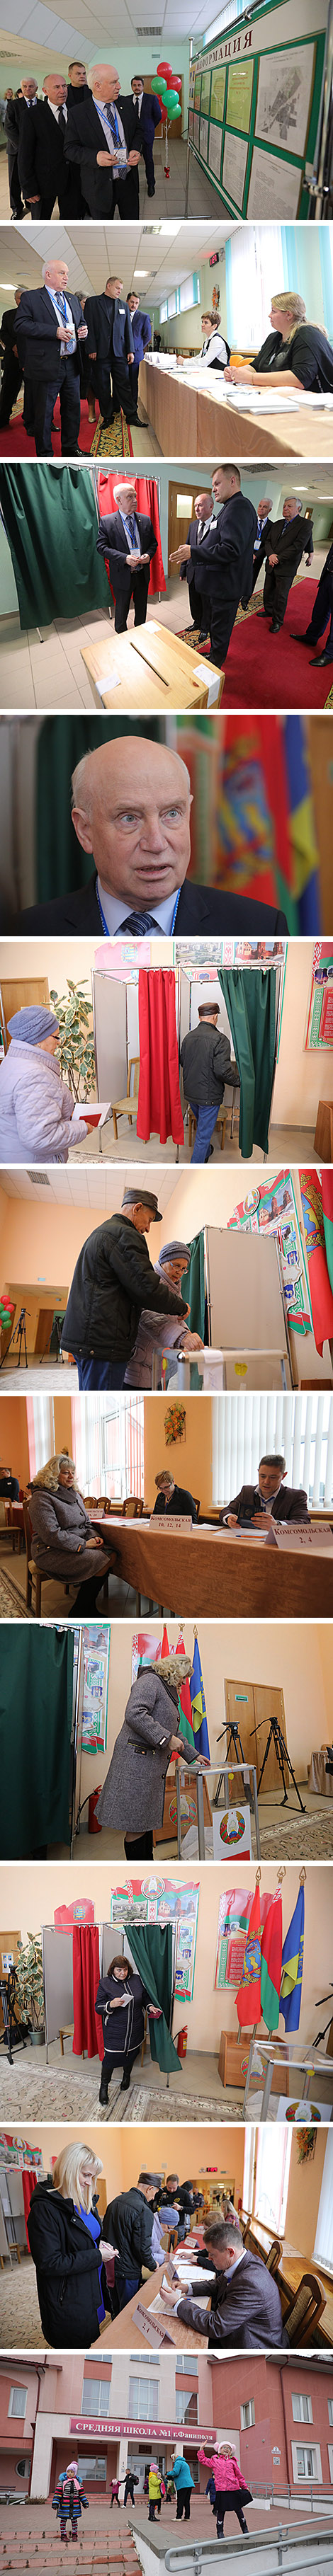 列贝杰夫在法尼波利参观了选区